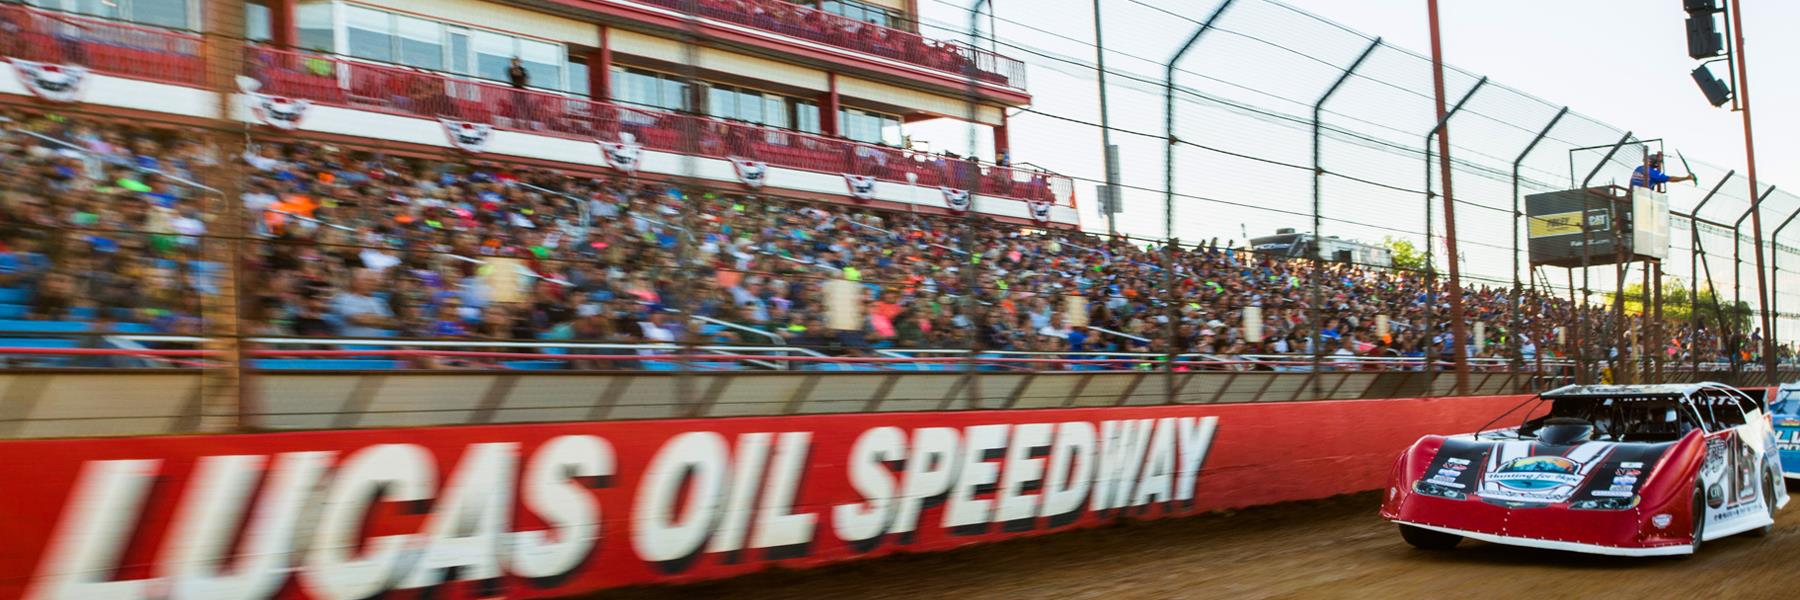 9/18/2020 - Lucas Oil Speedway